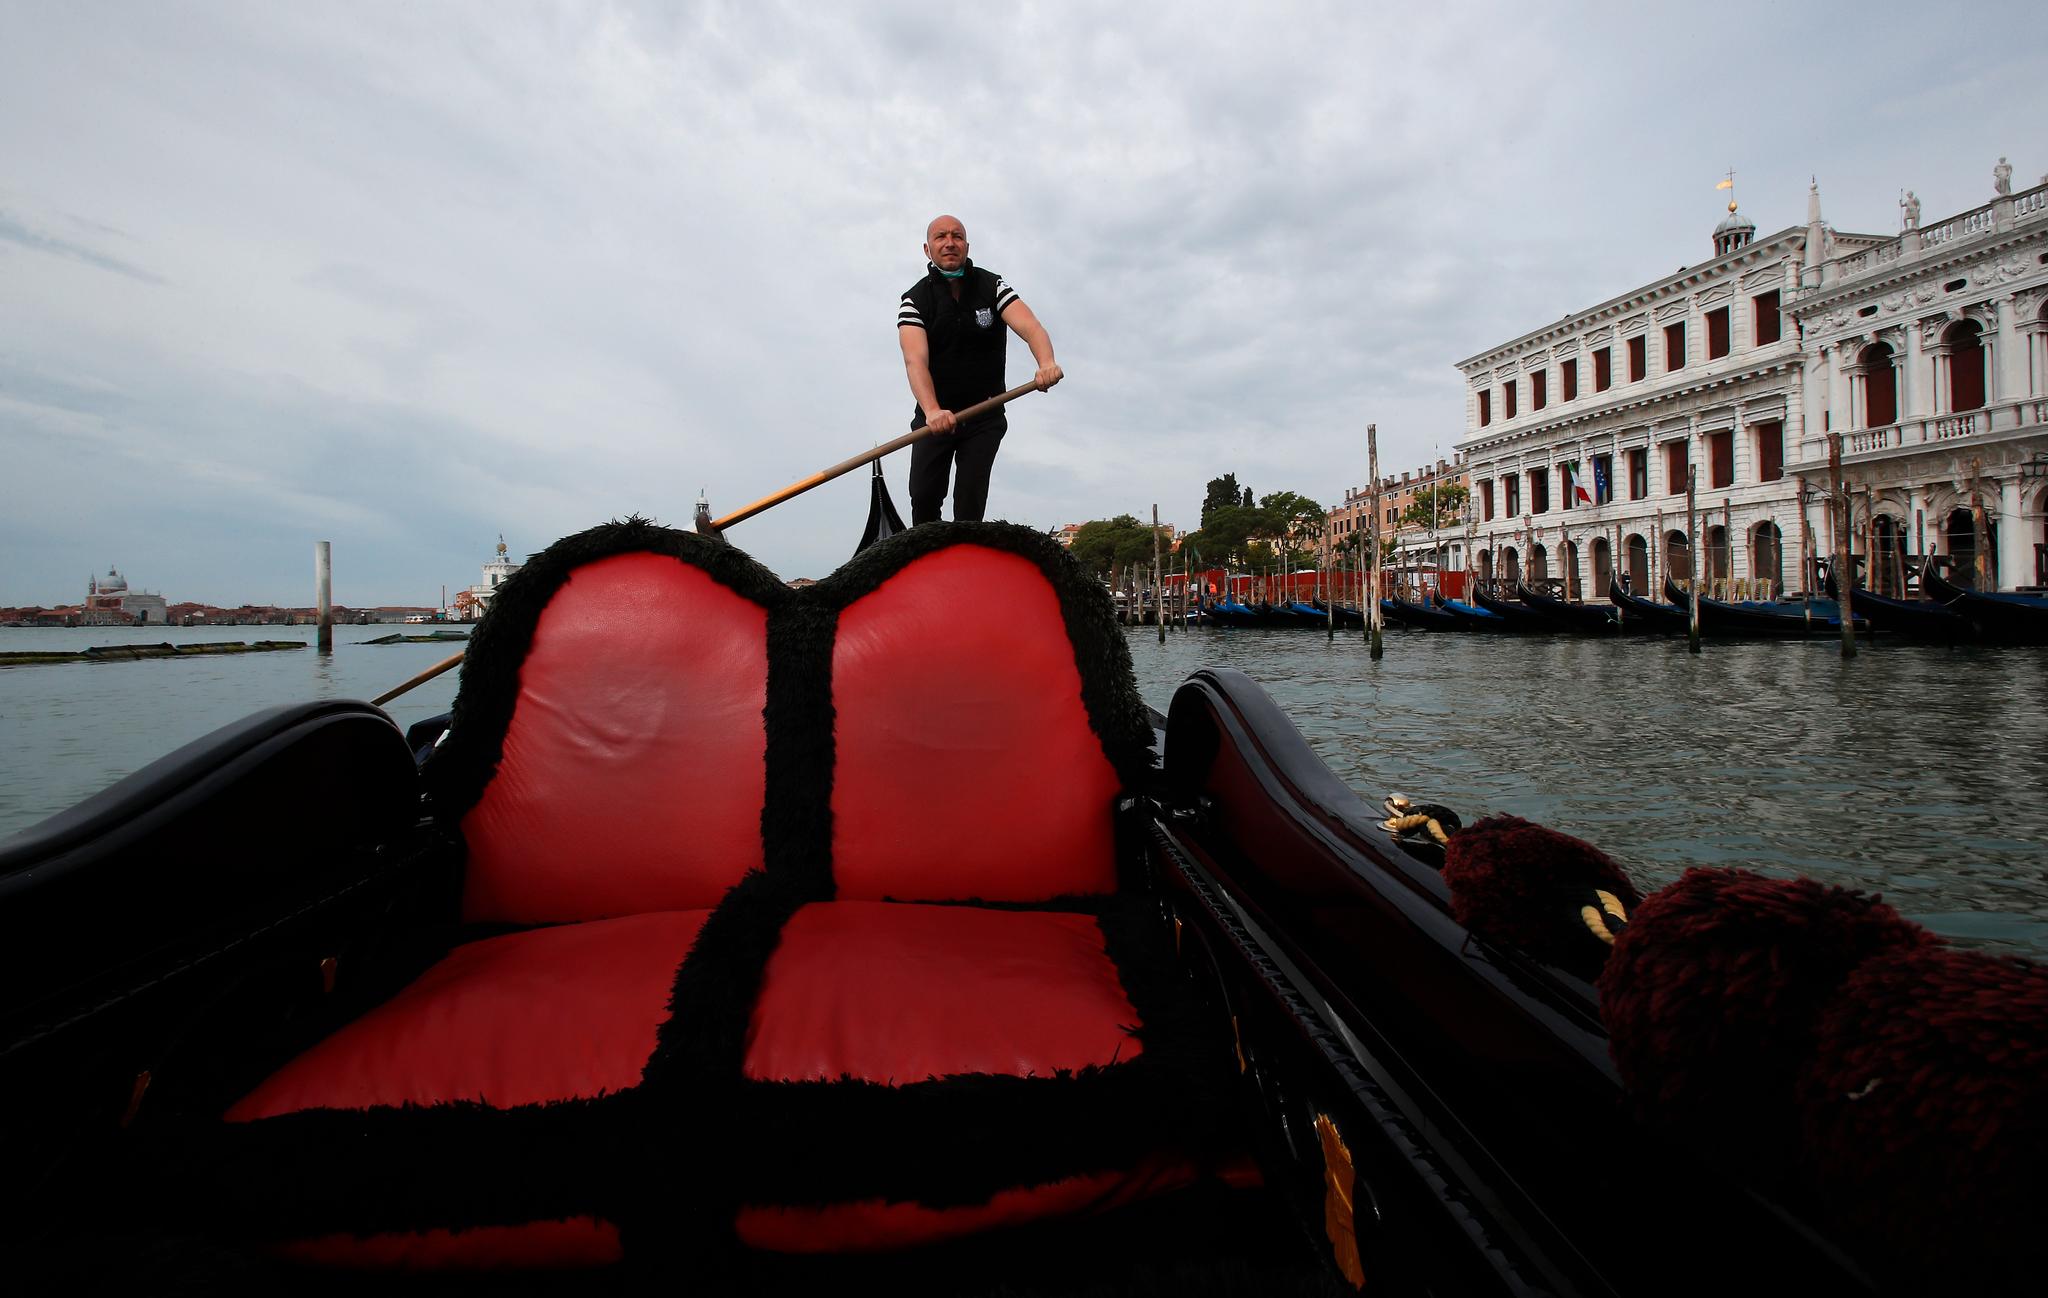 Gondolføreren Andrea Balbi leder en interesseorganisasjon for gondolførere. Koronapandemien har skapt økonomisk krise i Venezia, som er vant til at det kommer inn 3 milliarder kroner i turistrelaterte inntekter hvert år. 